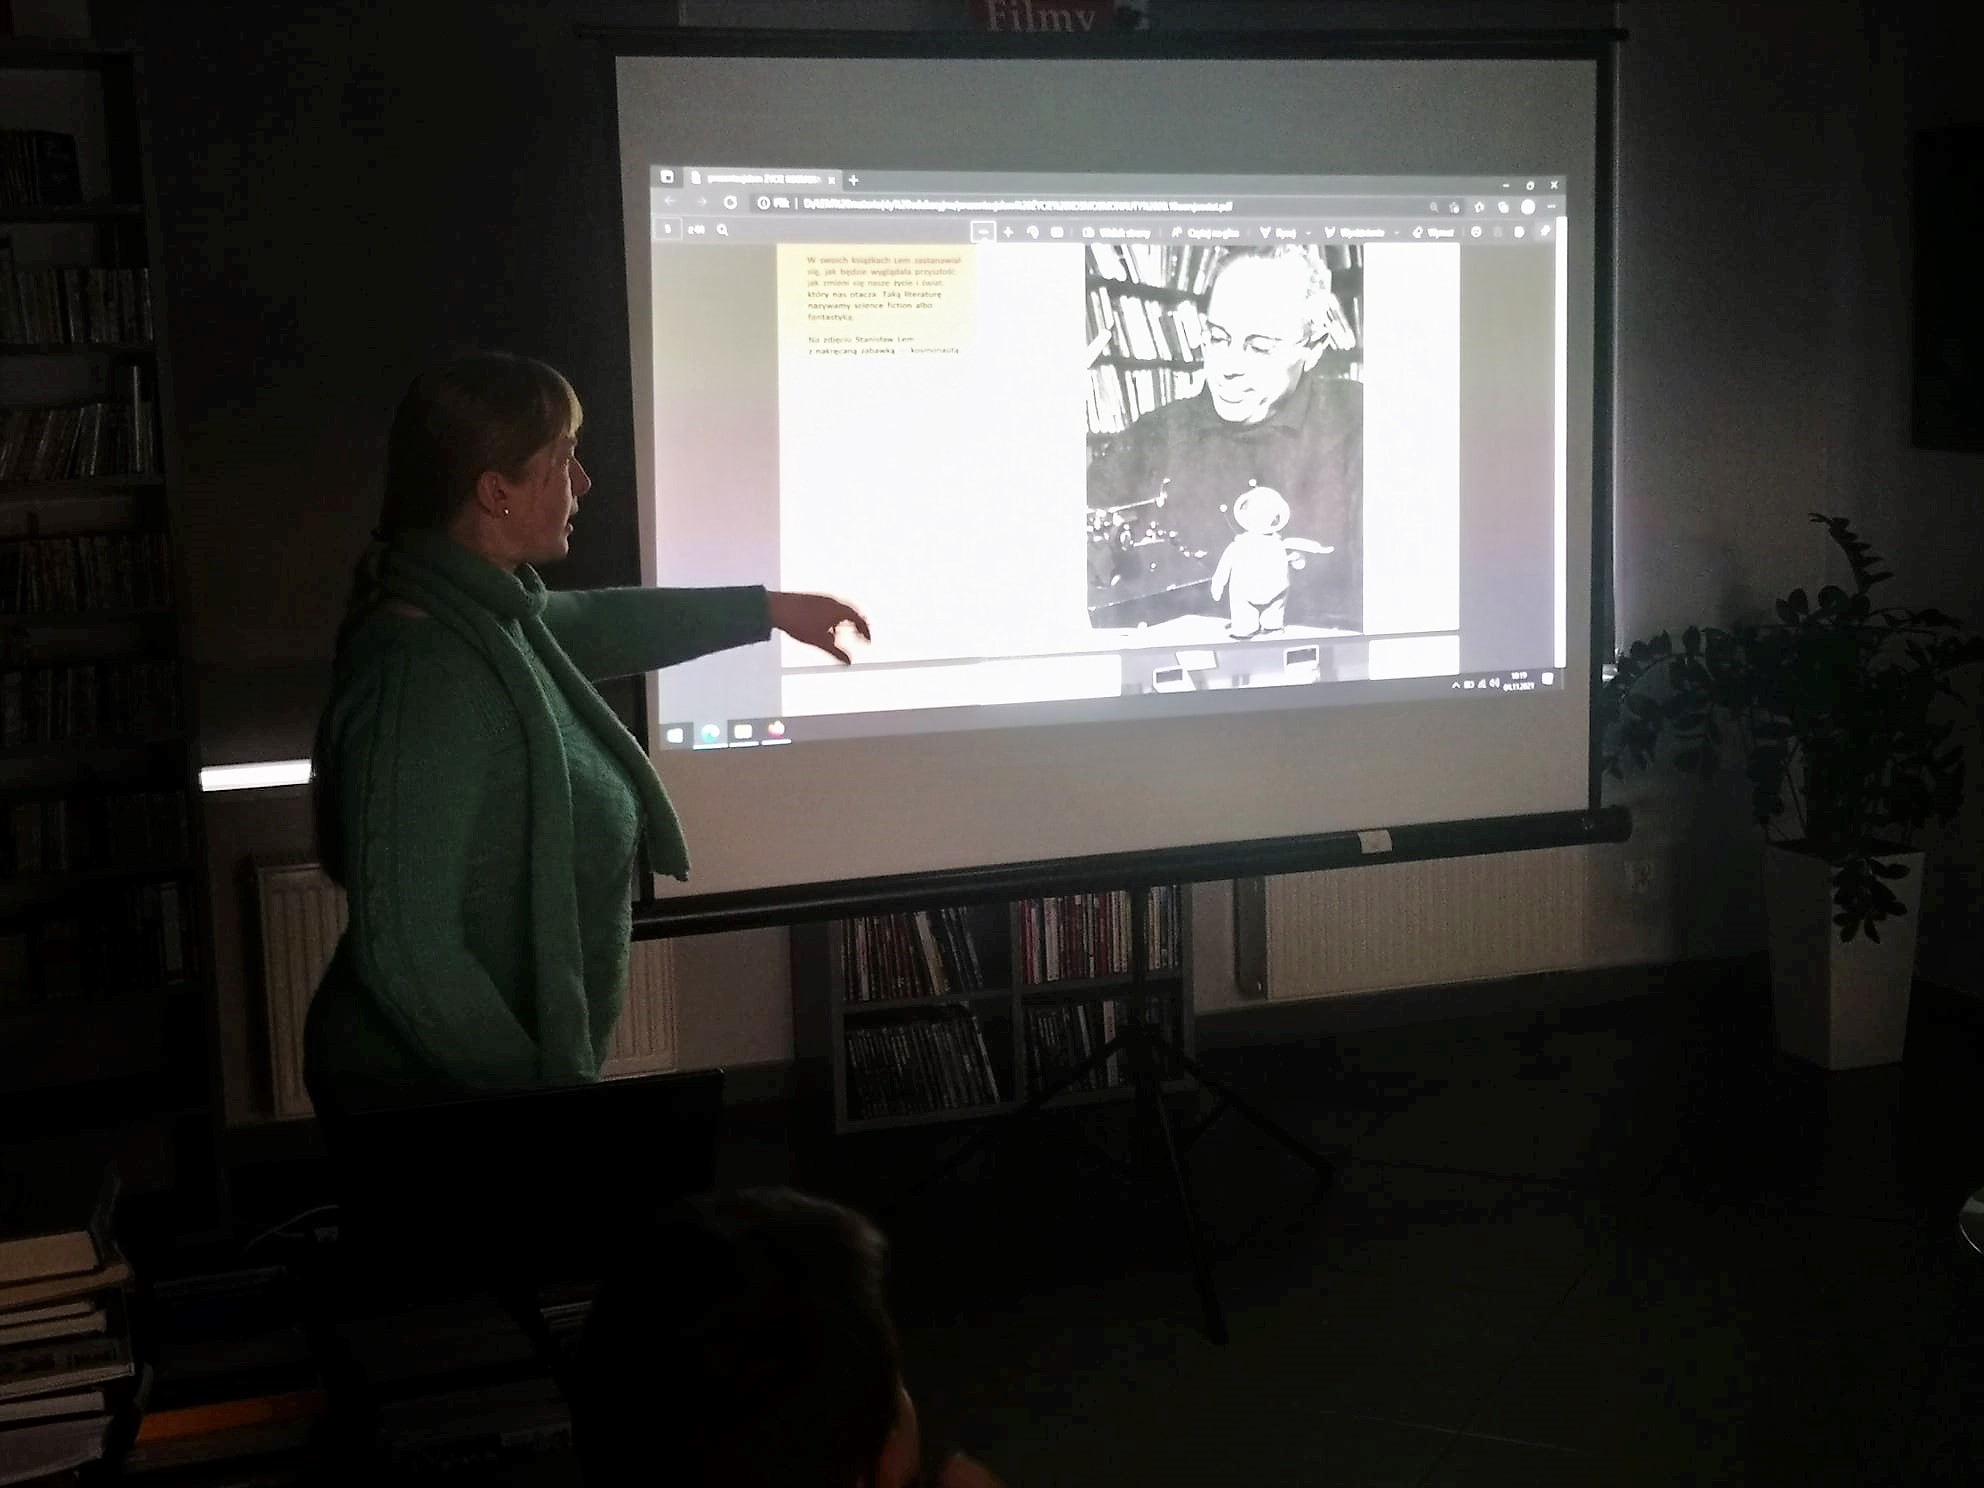 bibliotekarka stoi przy ekranie projektora w ciemnej sali, na ekranie Stanisław Lem